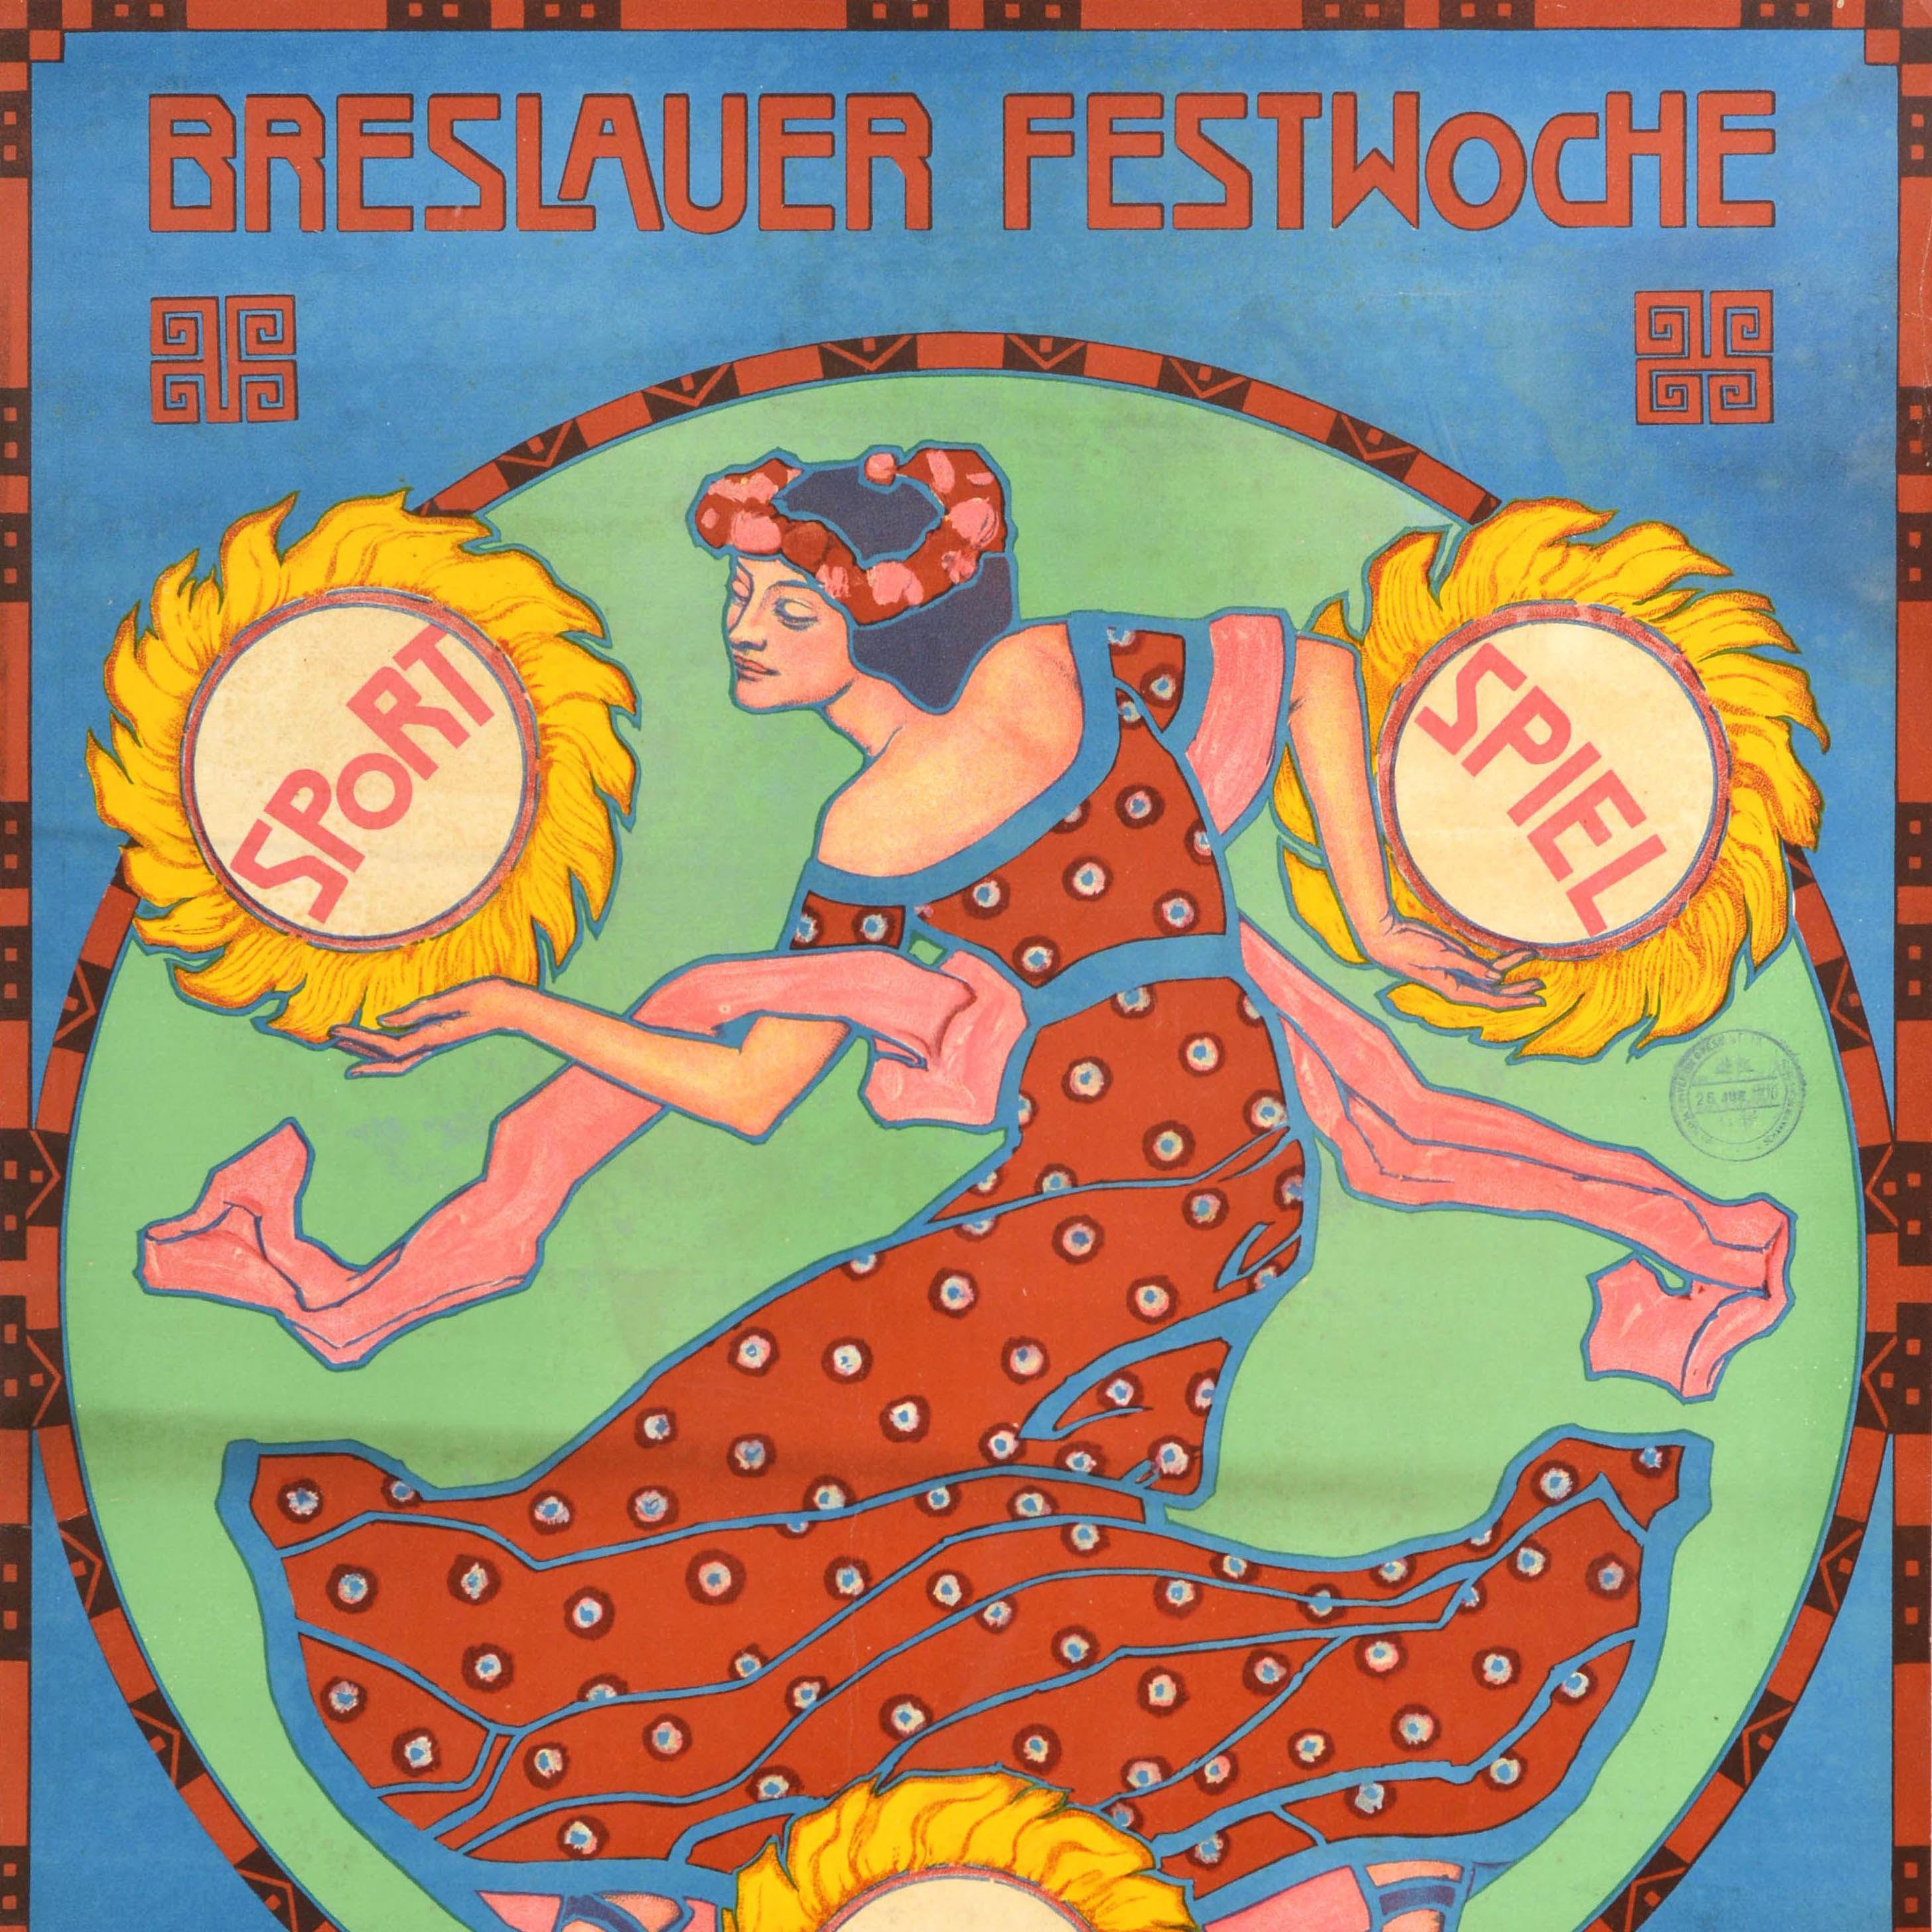 Original Antikes Werbeplakat, Wroclaw Festival Week Breslauer Festwoche, Breslauer Festwoche (Jugendstil), Print, von Unknown